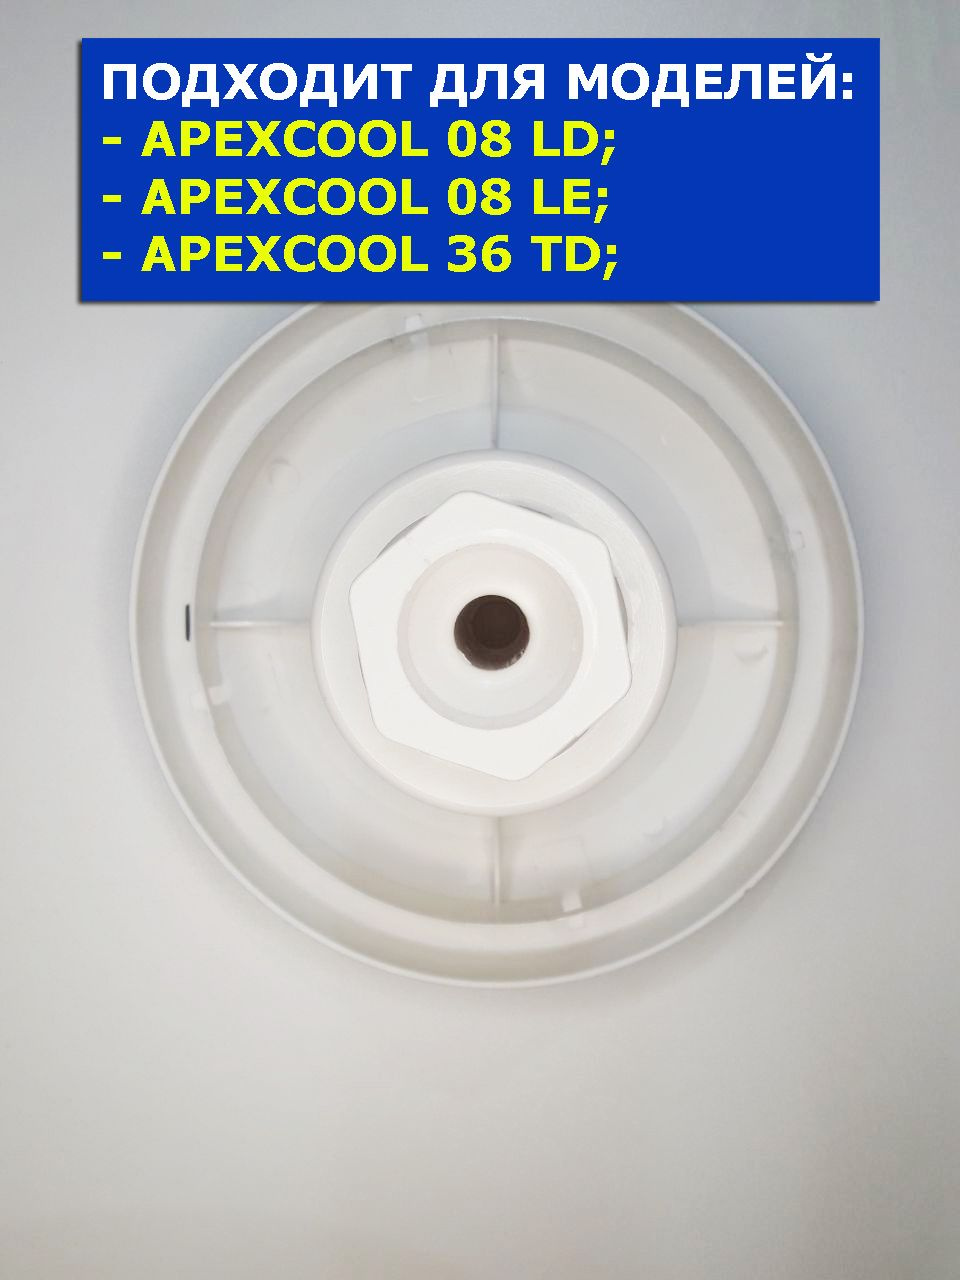 Водоприемник кулера для воды APEXCOOL 08 LD серебро